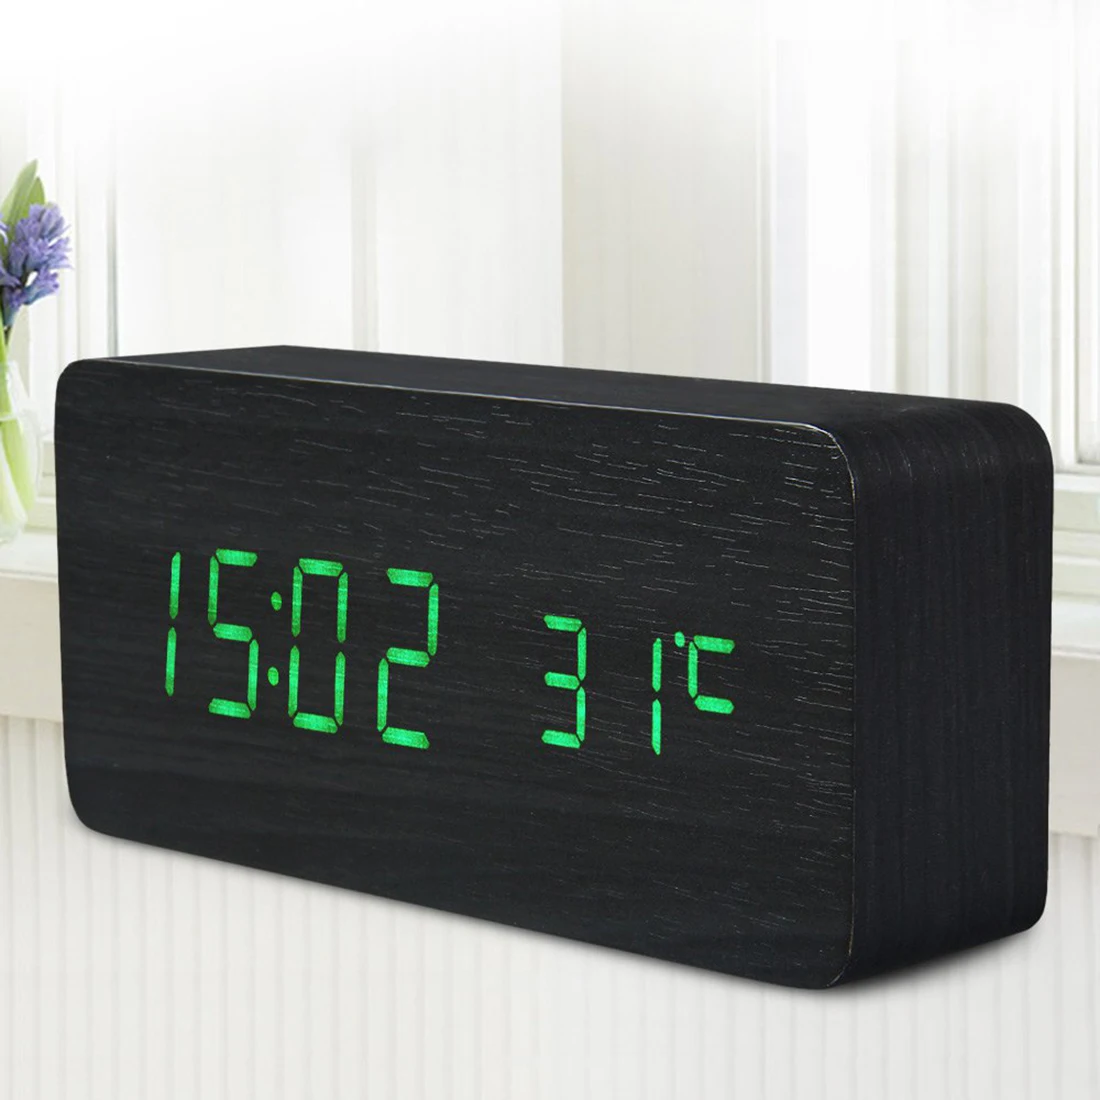 Деревянный светодиодный Будильник температура электронные часы управление звуками цифровой светодиодный дисплей Настольный Календарь настольные часы - Цвет: Зеленый